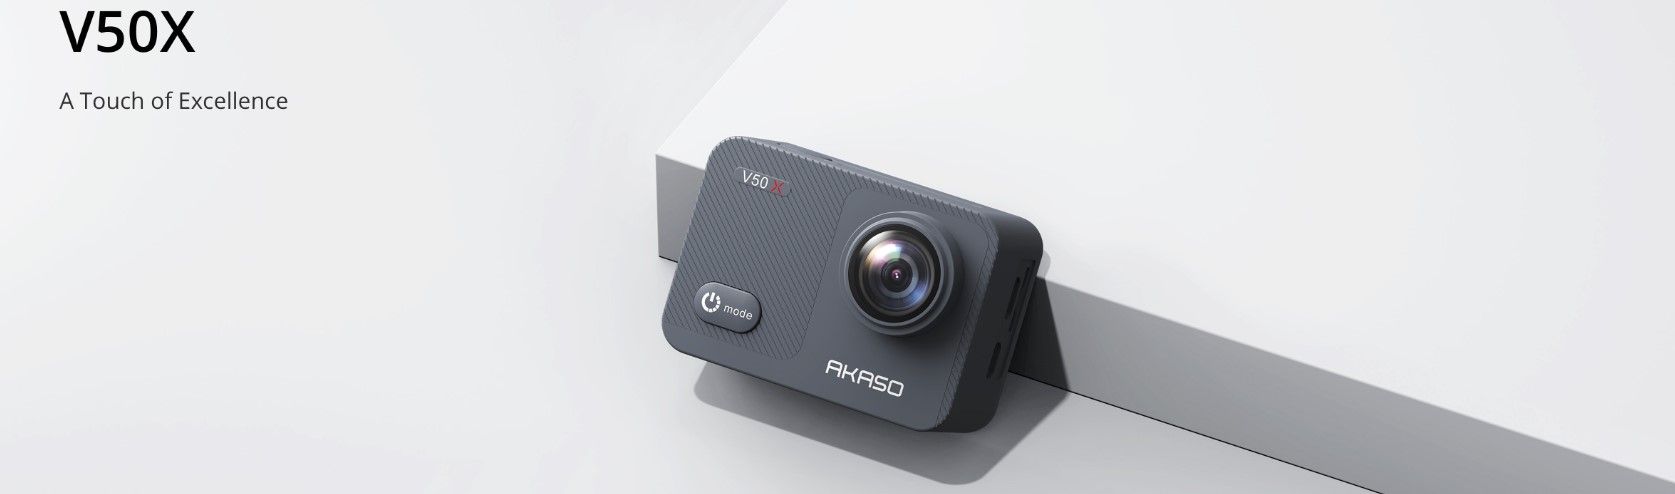 sodobna akcijska kamera akaso V50 X2 čudovite fotografije visokokakovostni videoposnetki različni načini polnilna baterija visoka vzdržljivost